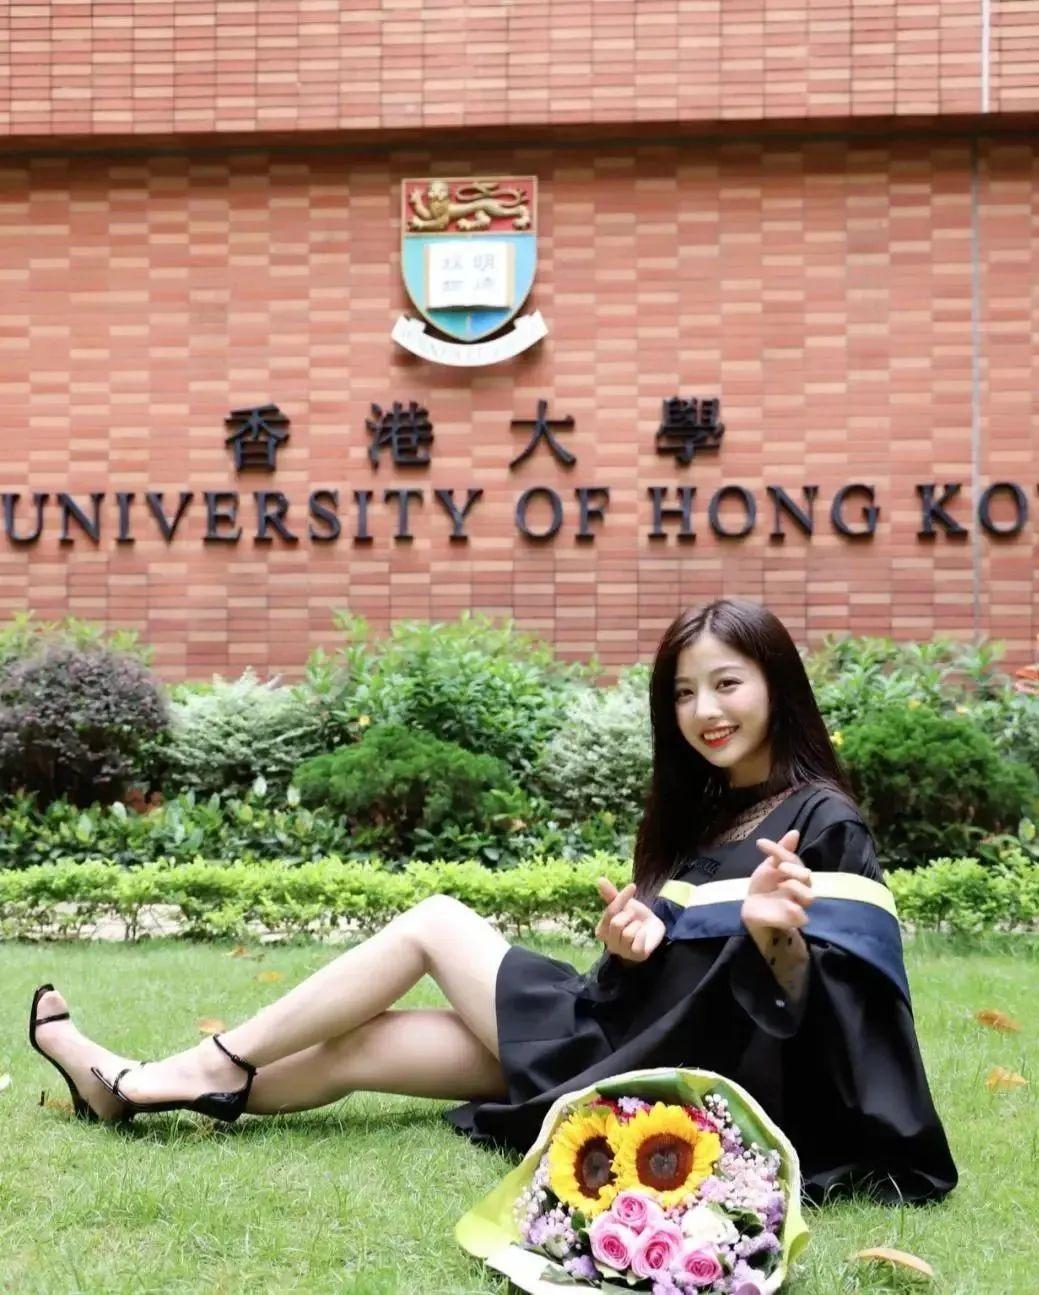 手握香港大学土木工程和资源管理双学位,还有消息称正在哥大念硕士.